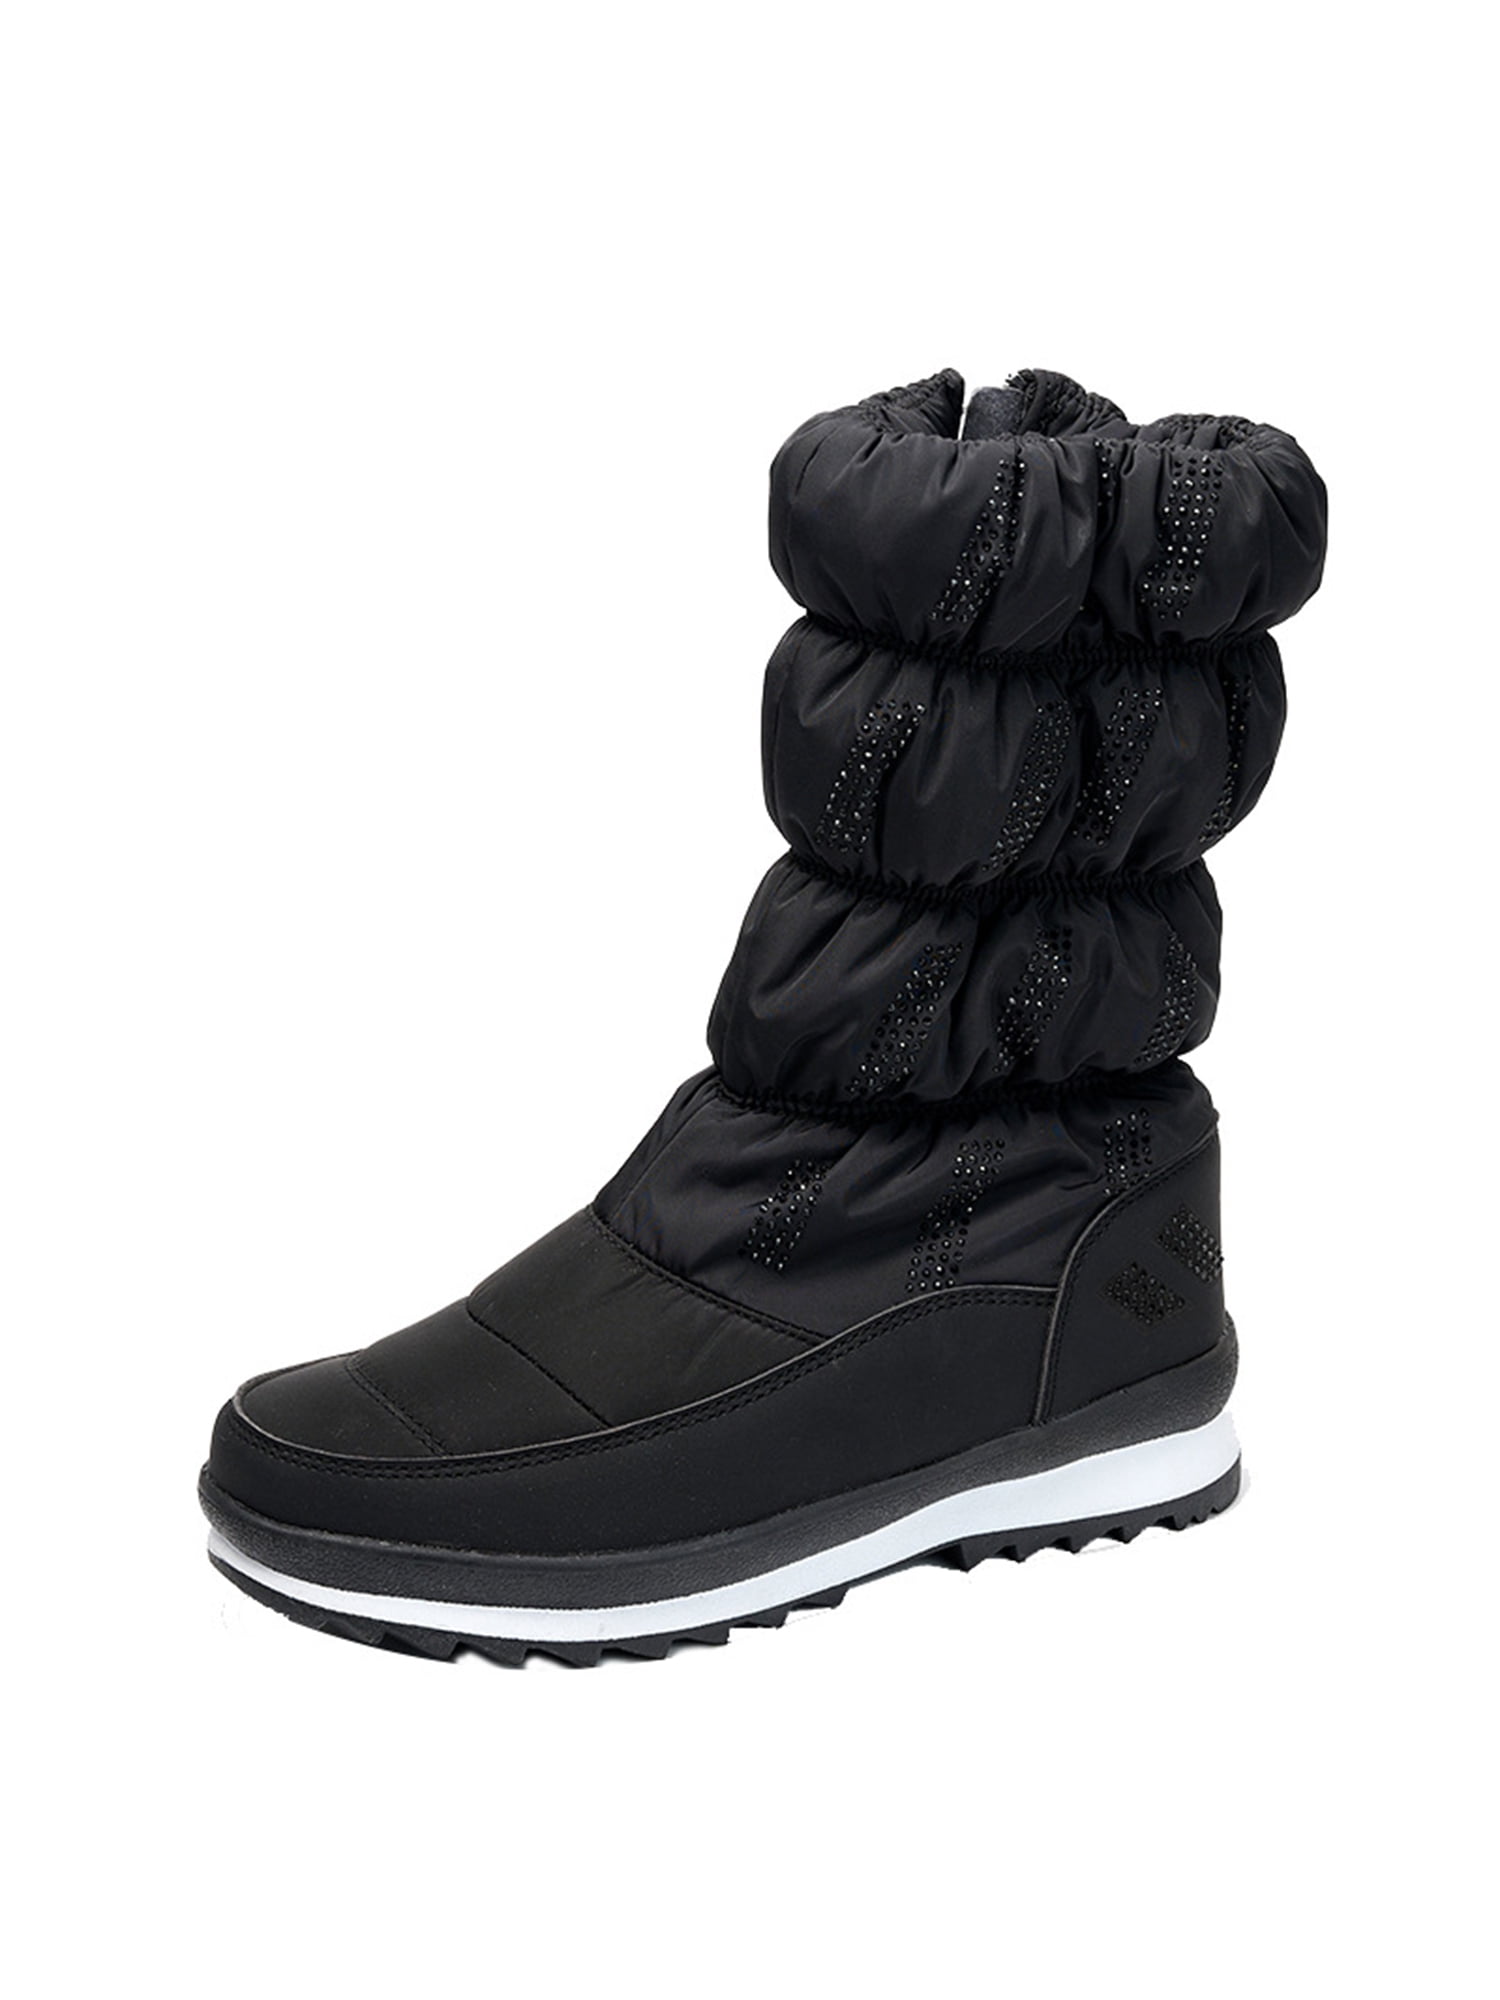 Zodanni Women Soft Zipper Winter Boot Walking Platform Boots ...